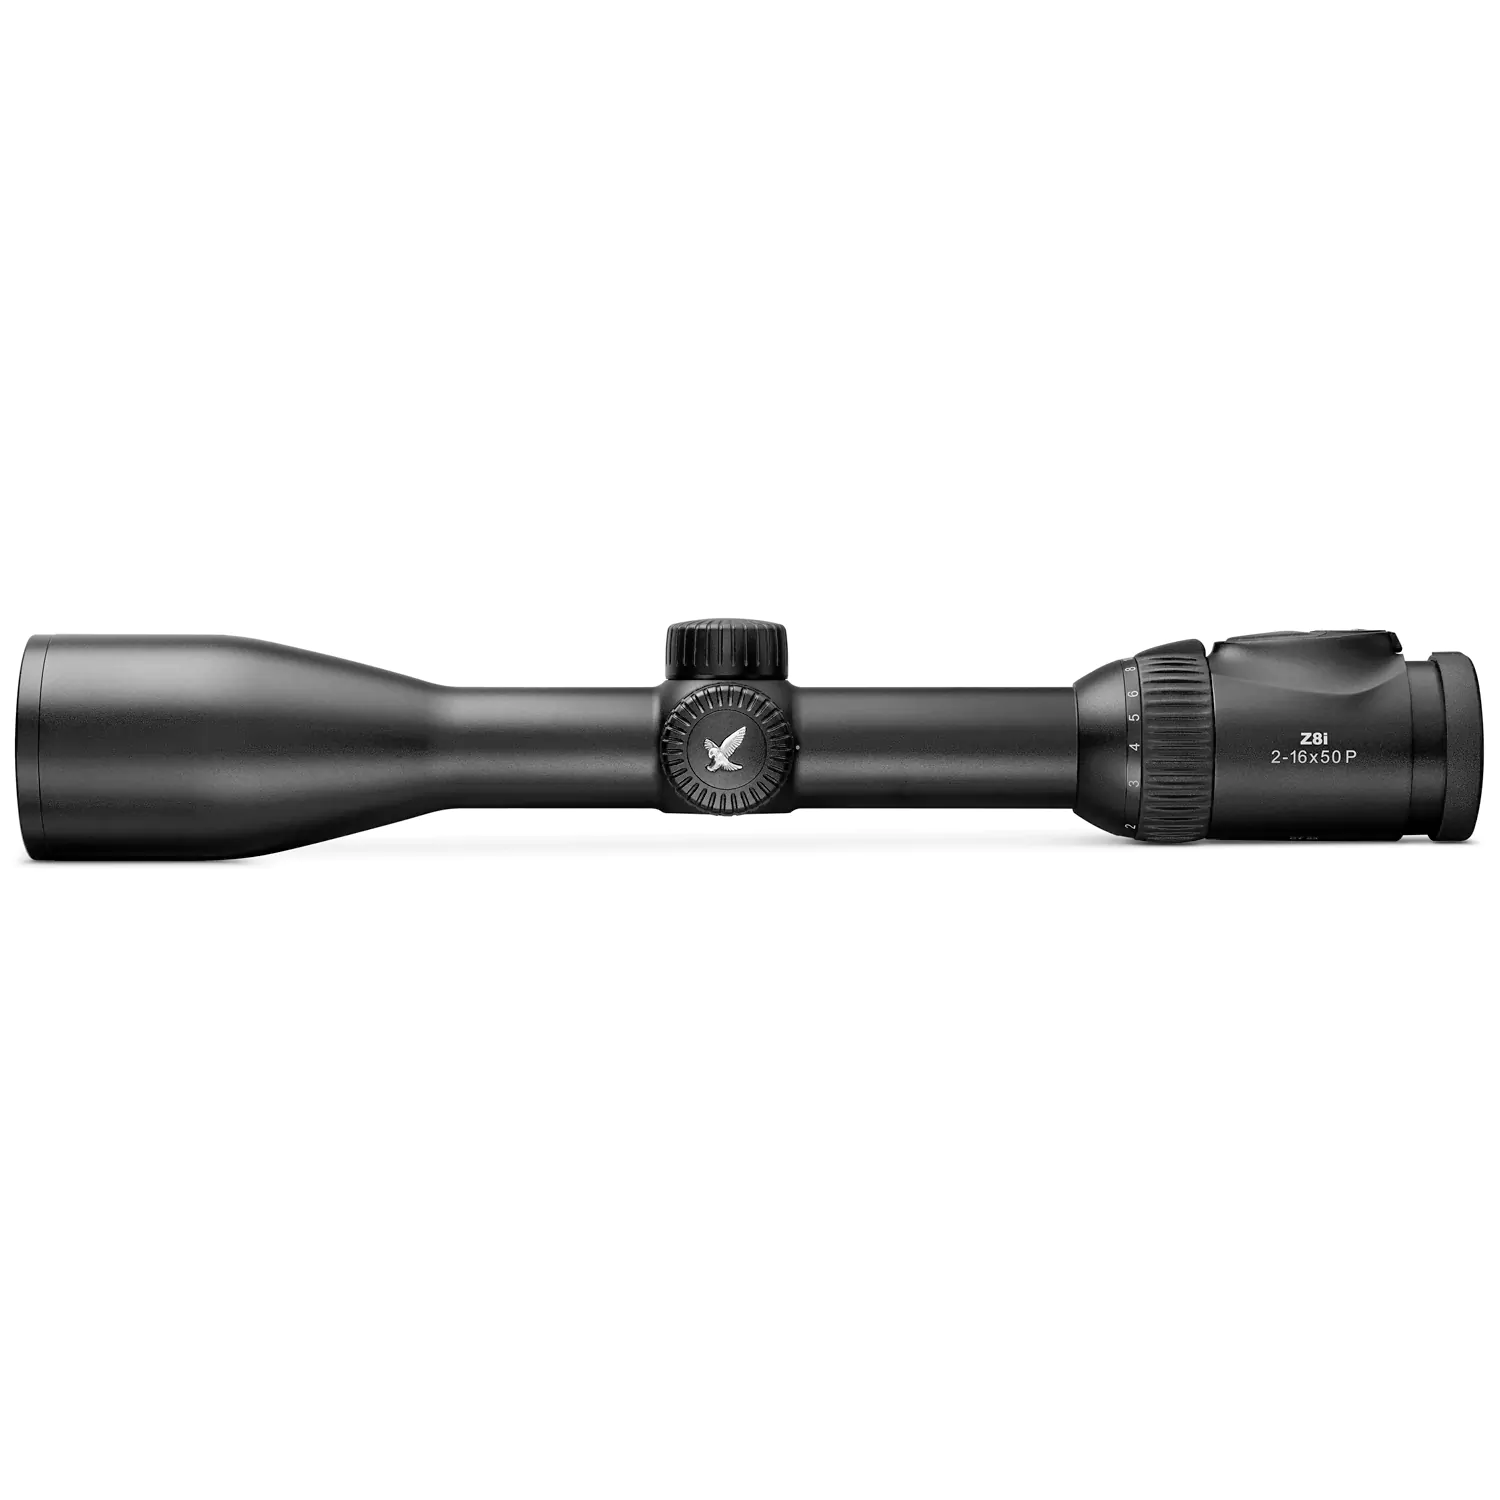 施华洛世奇瞄准镜 Z8i 2-16×50 P 奥地利原装进口白光瞄